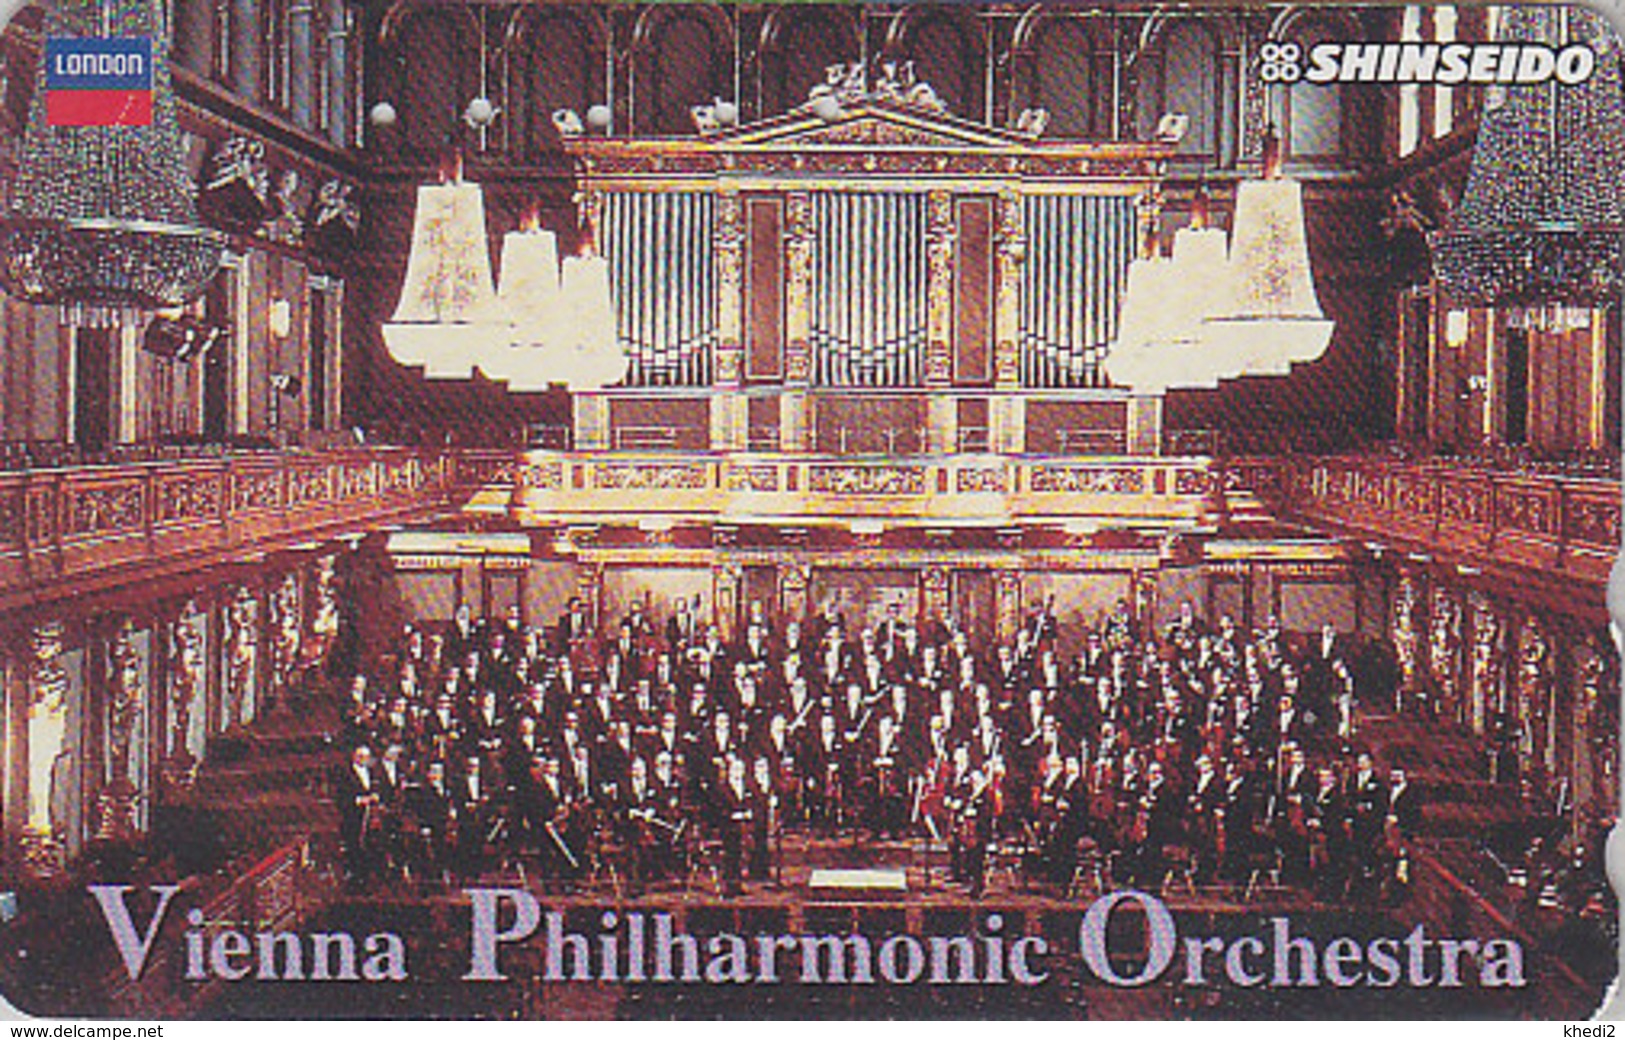 Télécarte JAPON / 110-011 - MUSIQUE - WIENER PHILHARMONIKER & ORGUE Orgel Organ - JAPAN Phonecard AUSTRIA Rel - Musik